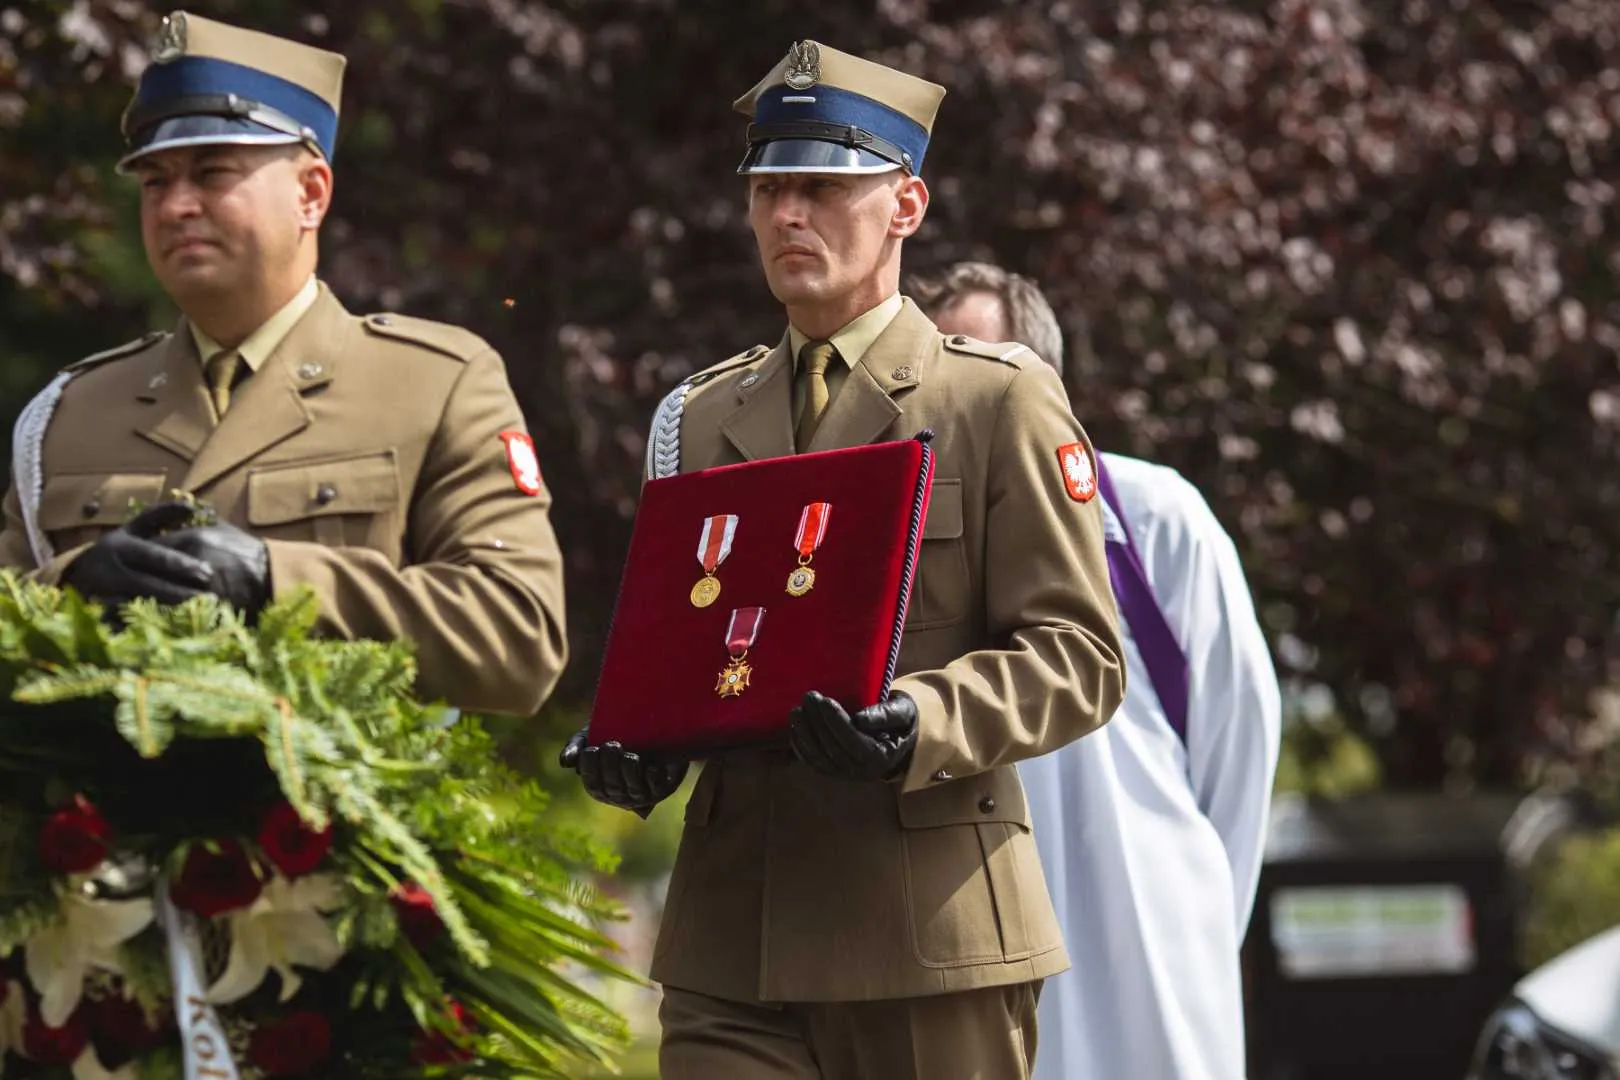 Ceremonia pogrzebu wojskowego w Warszawie